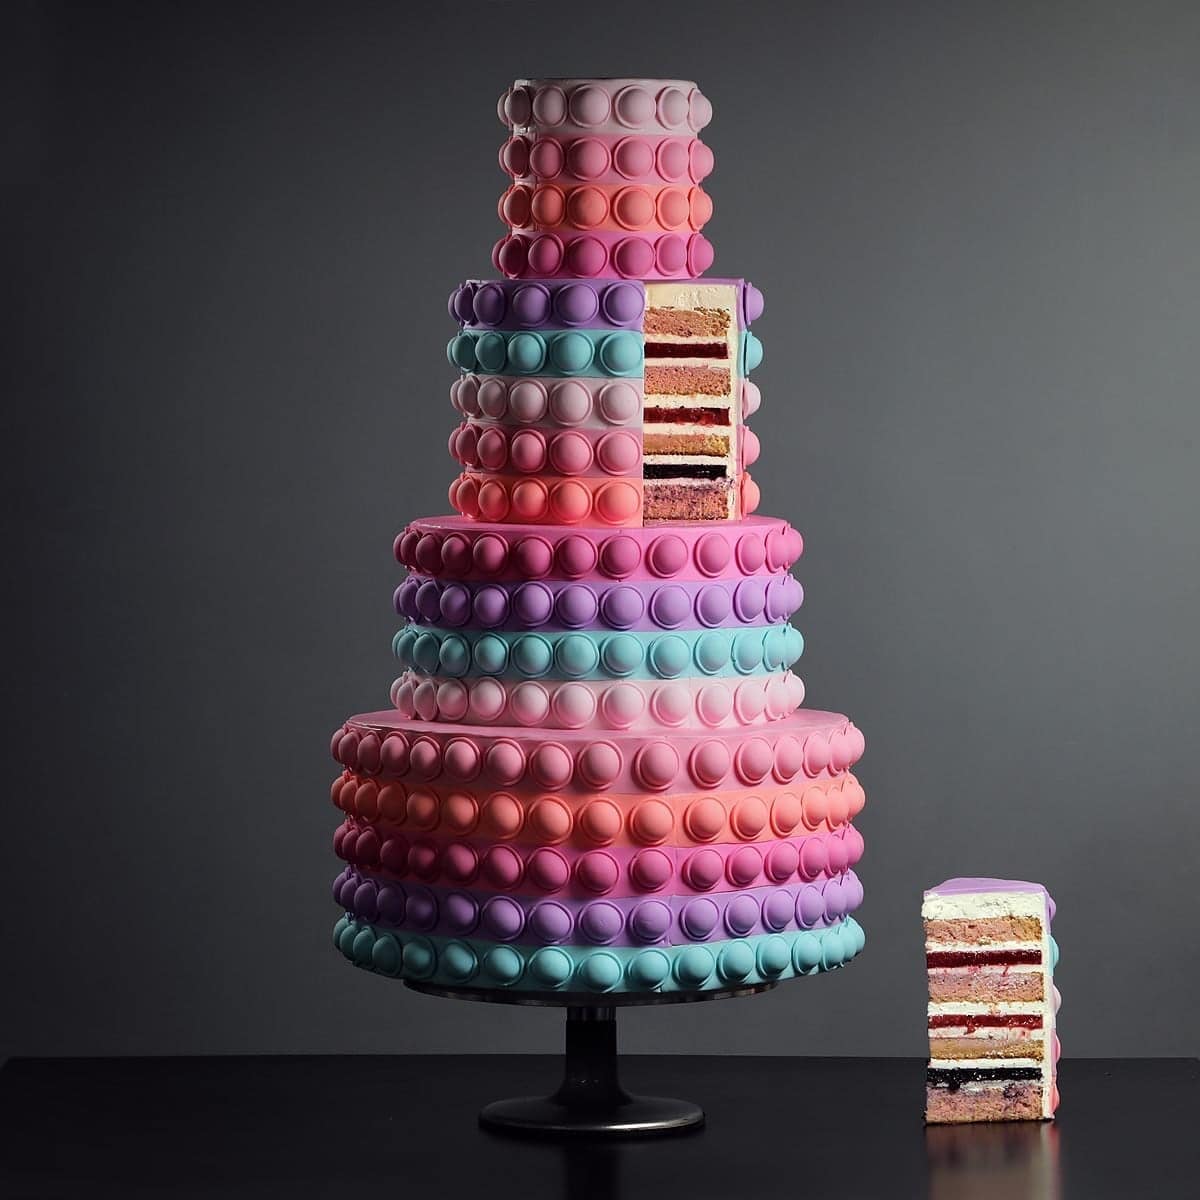 Geometric Cakes by Diana Kasko